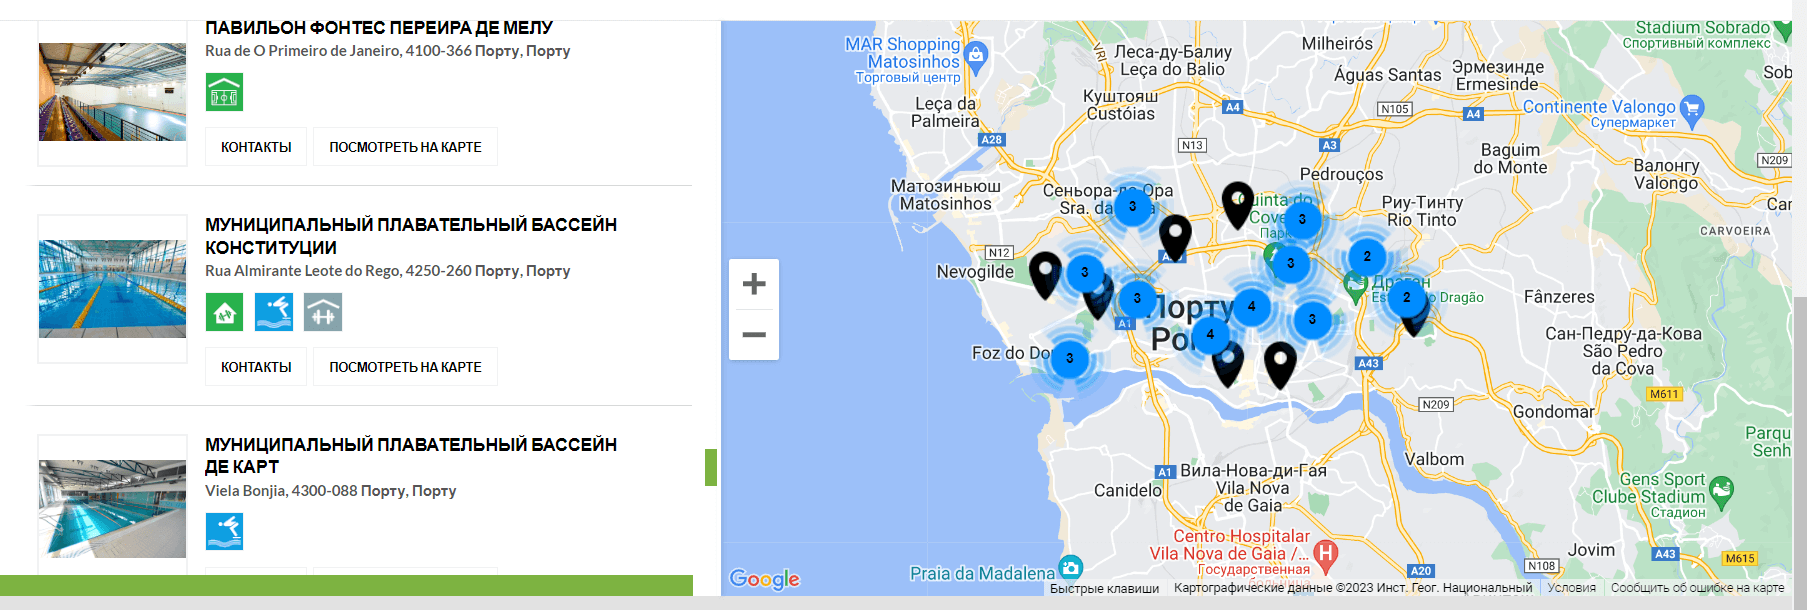 карта спортивных секций Португалия